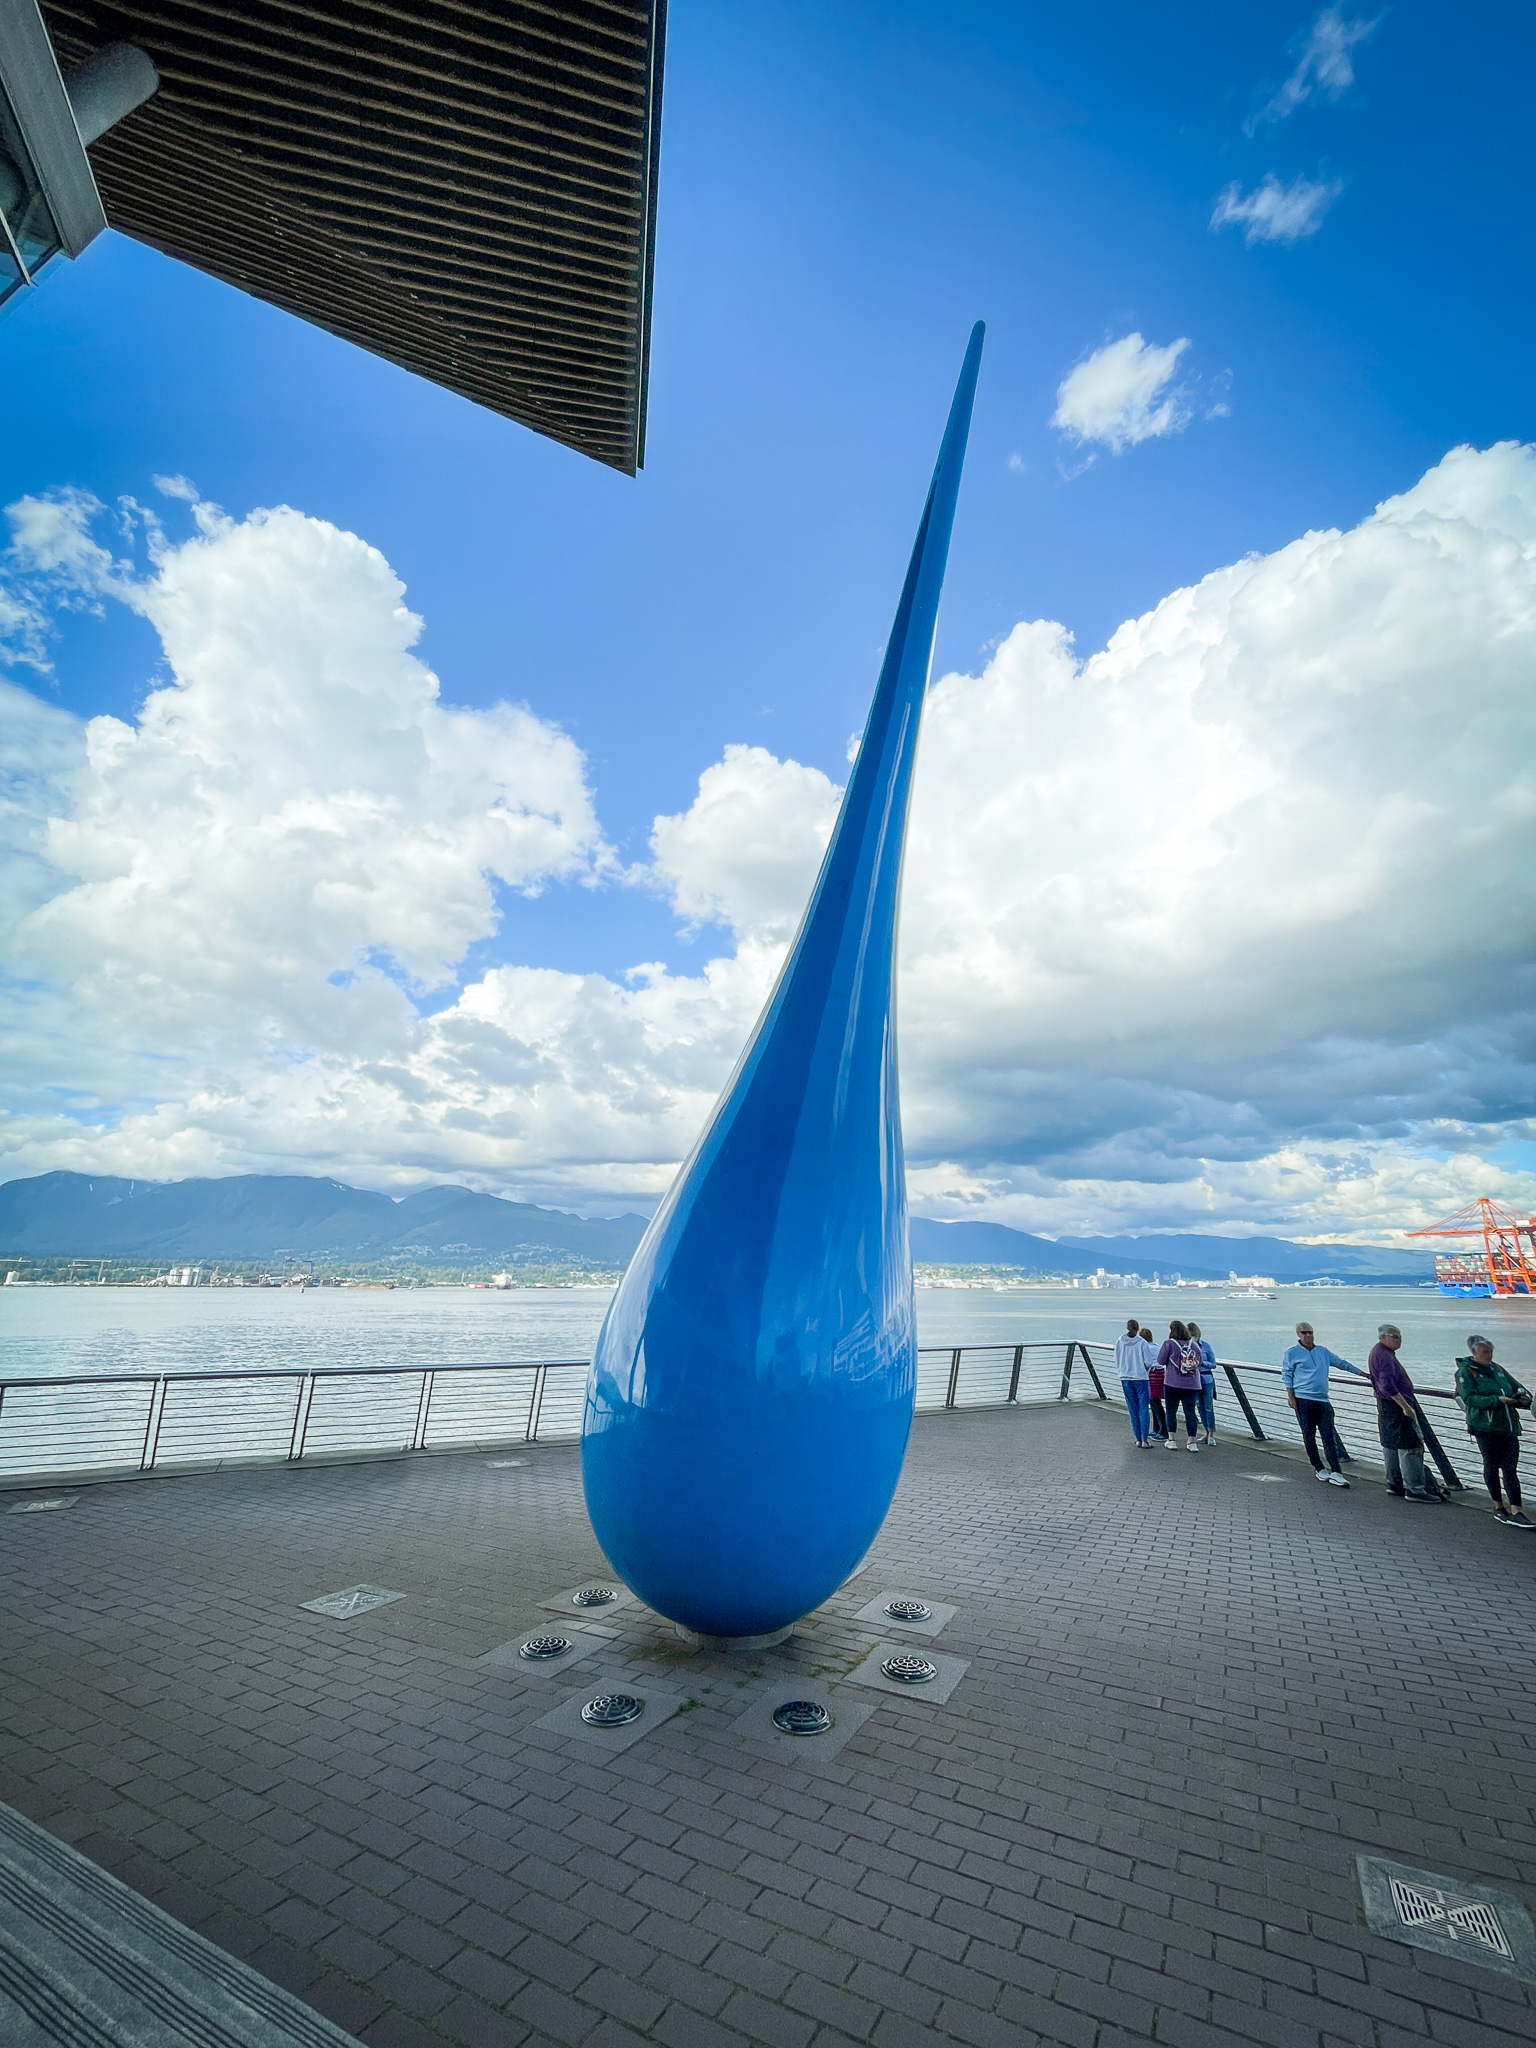 The Drop raindrop sculpture Vancouver BC Canada